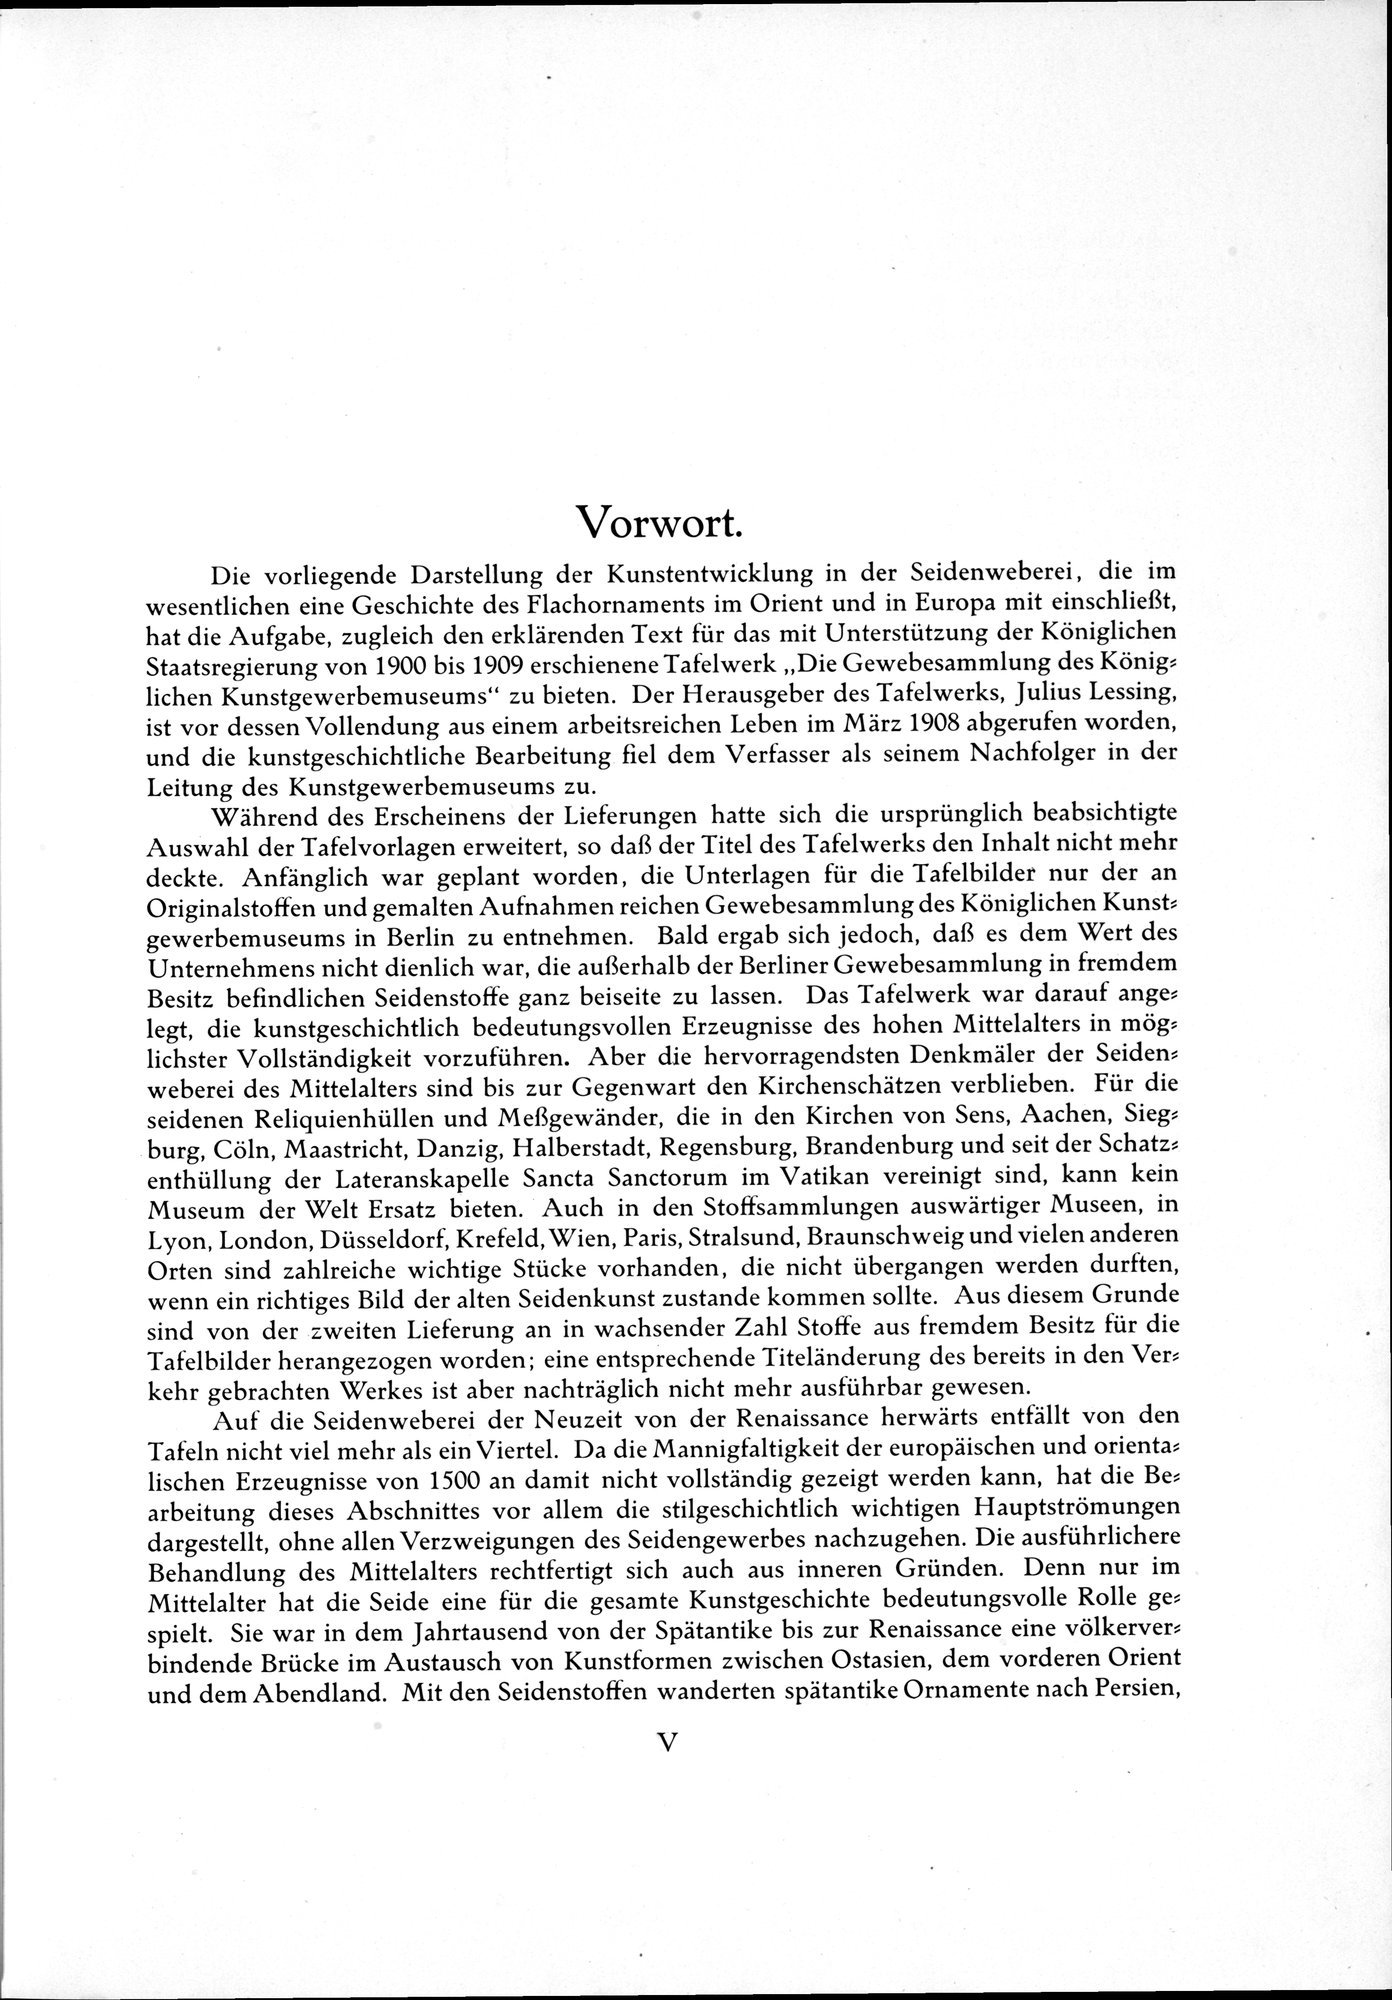 Kunstgeschichte der Seidenweberei : vol.1 / Page 13 (Grayscale High Resolution Image)